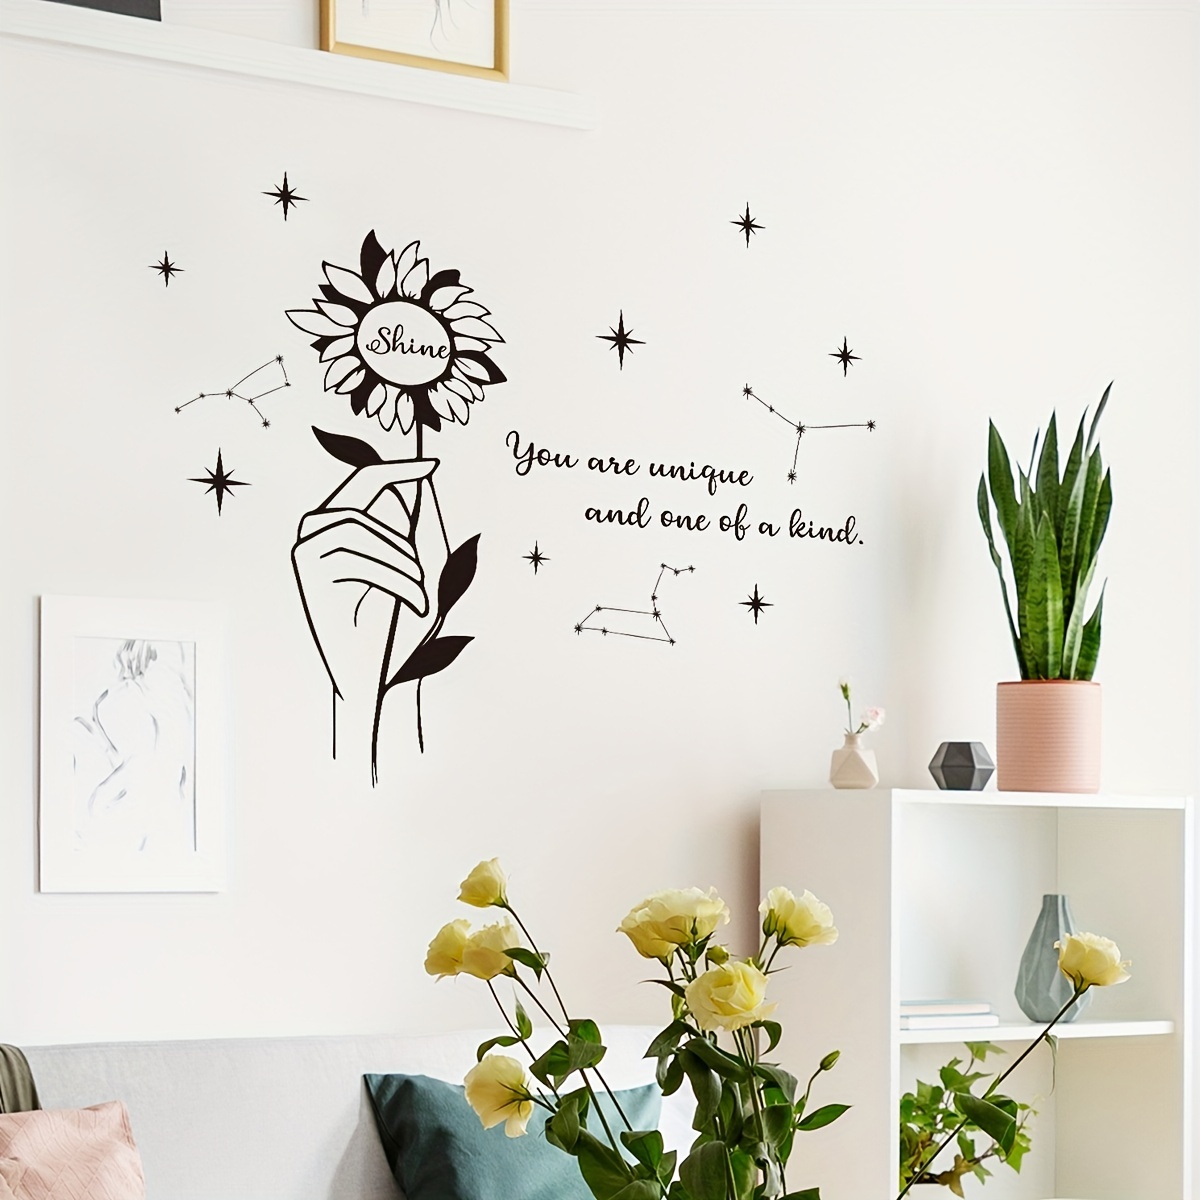 Decoro a parete con stelle e frasi motivazionali - Per la casa e